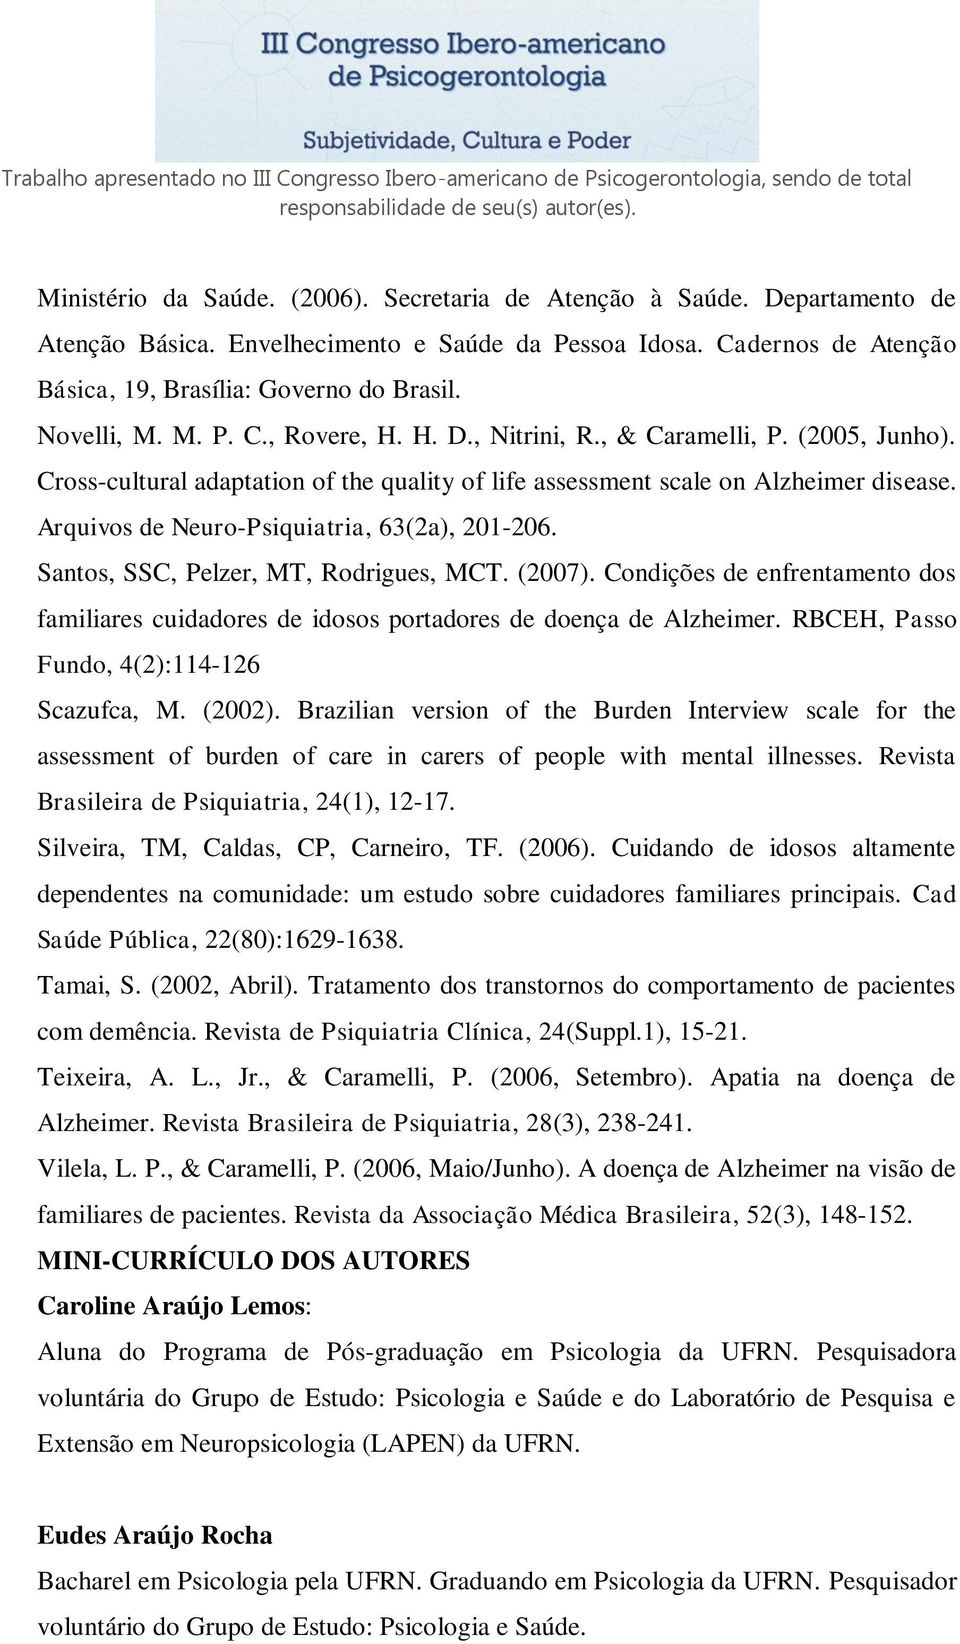 Arquivos de Neuro-Psiquiatria, 63(2a), 201-206. Santos, SSC, Pelzer, MT, Rodrigues, MCT. (2007). Condições de enfrentamento dos familiares cuidadores de idosos portadores de doença de Alzheimer.